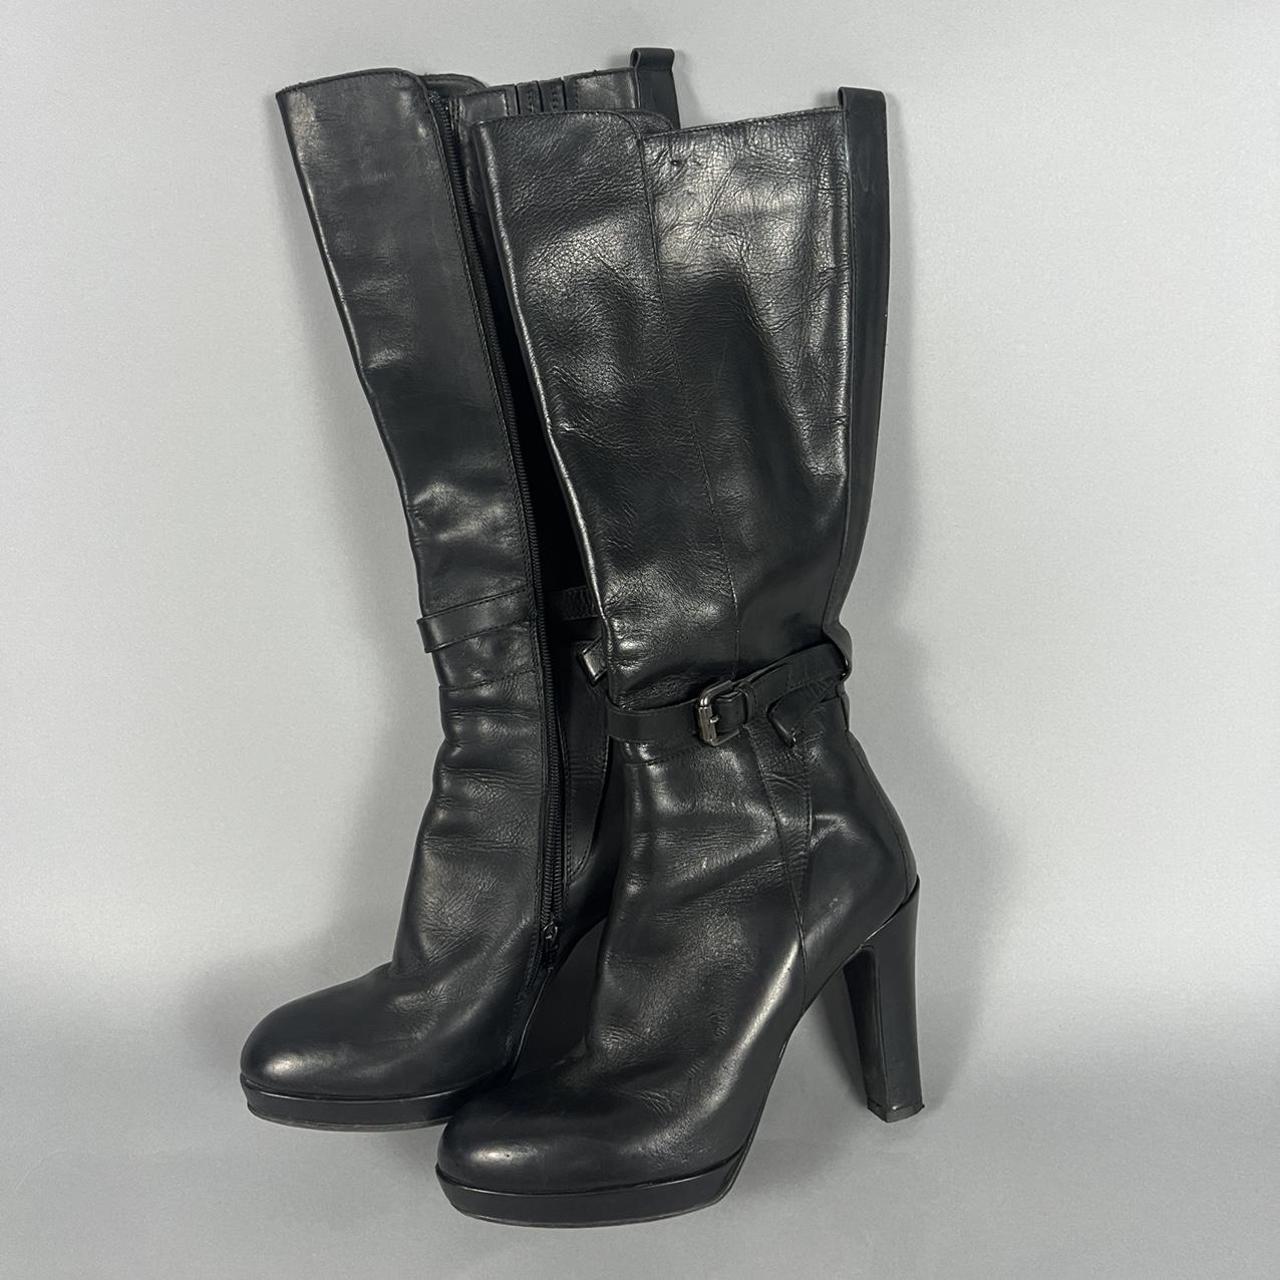 ️ Black Leather Platform Knee Boots ️ Size 39.5,... - Depop